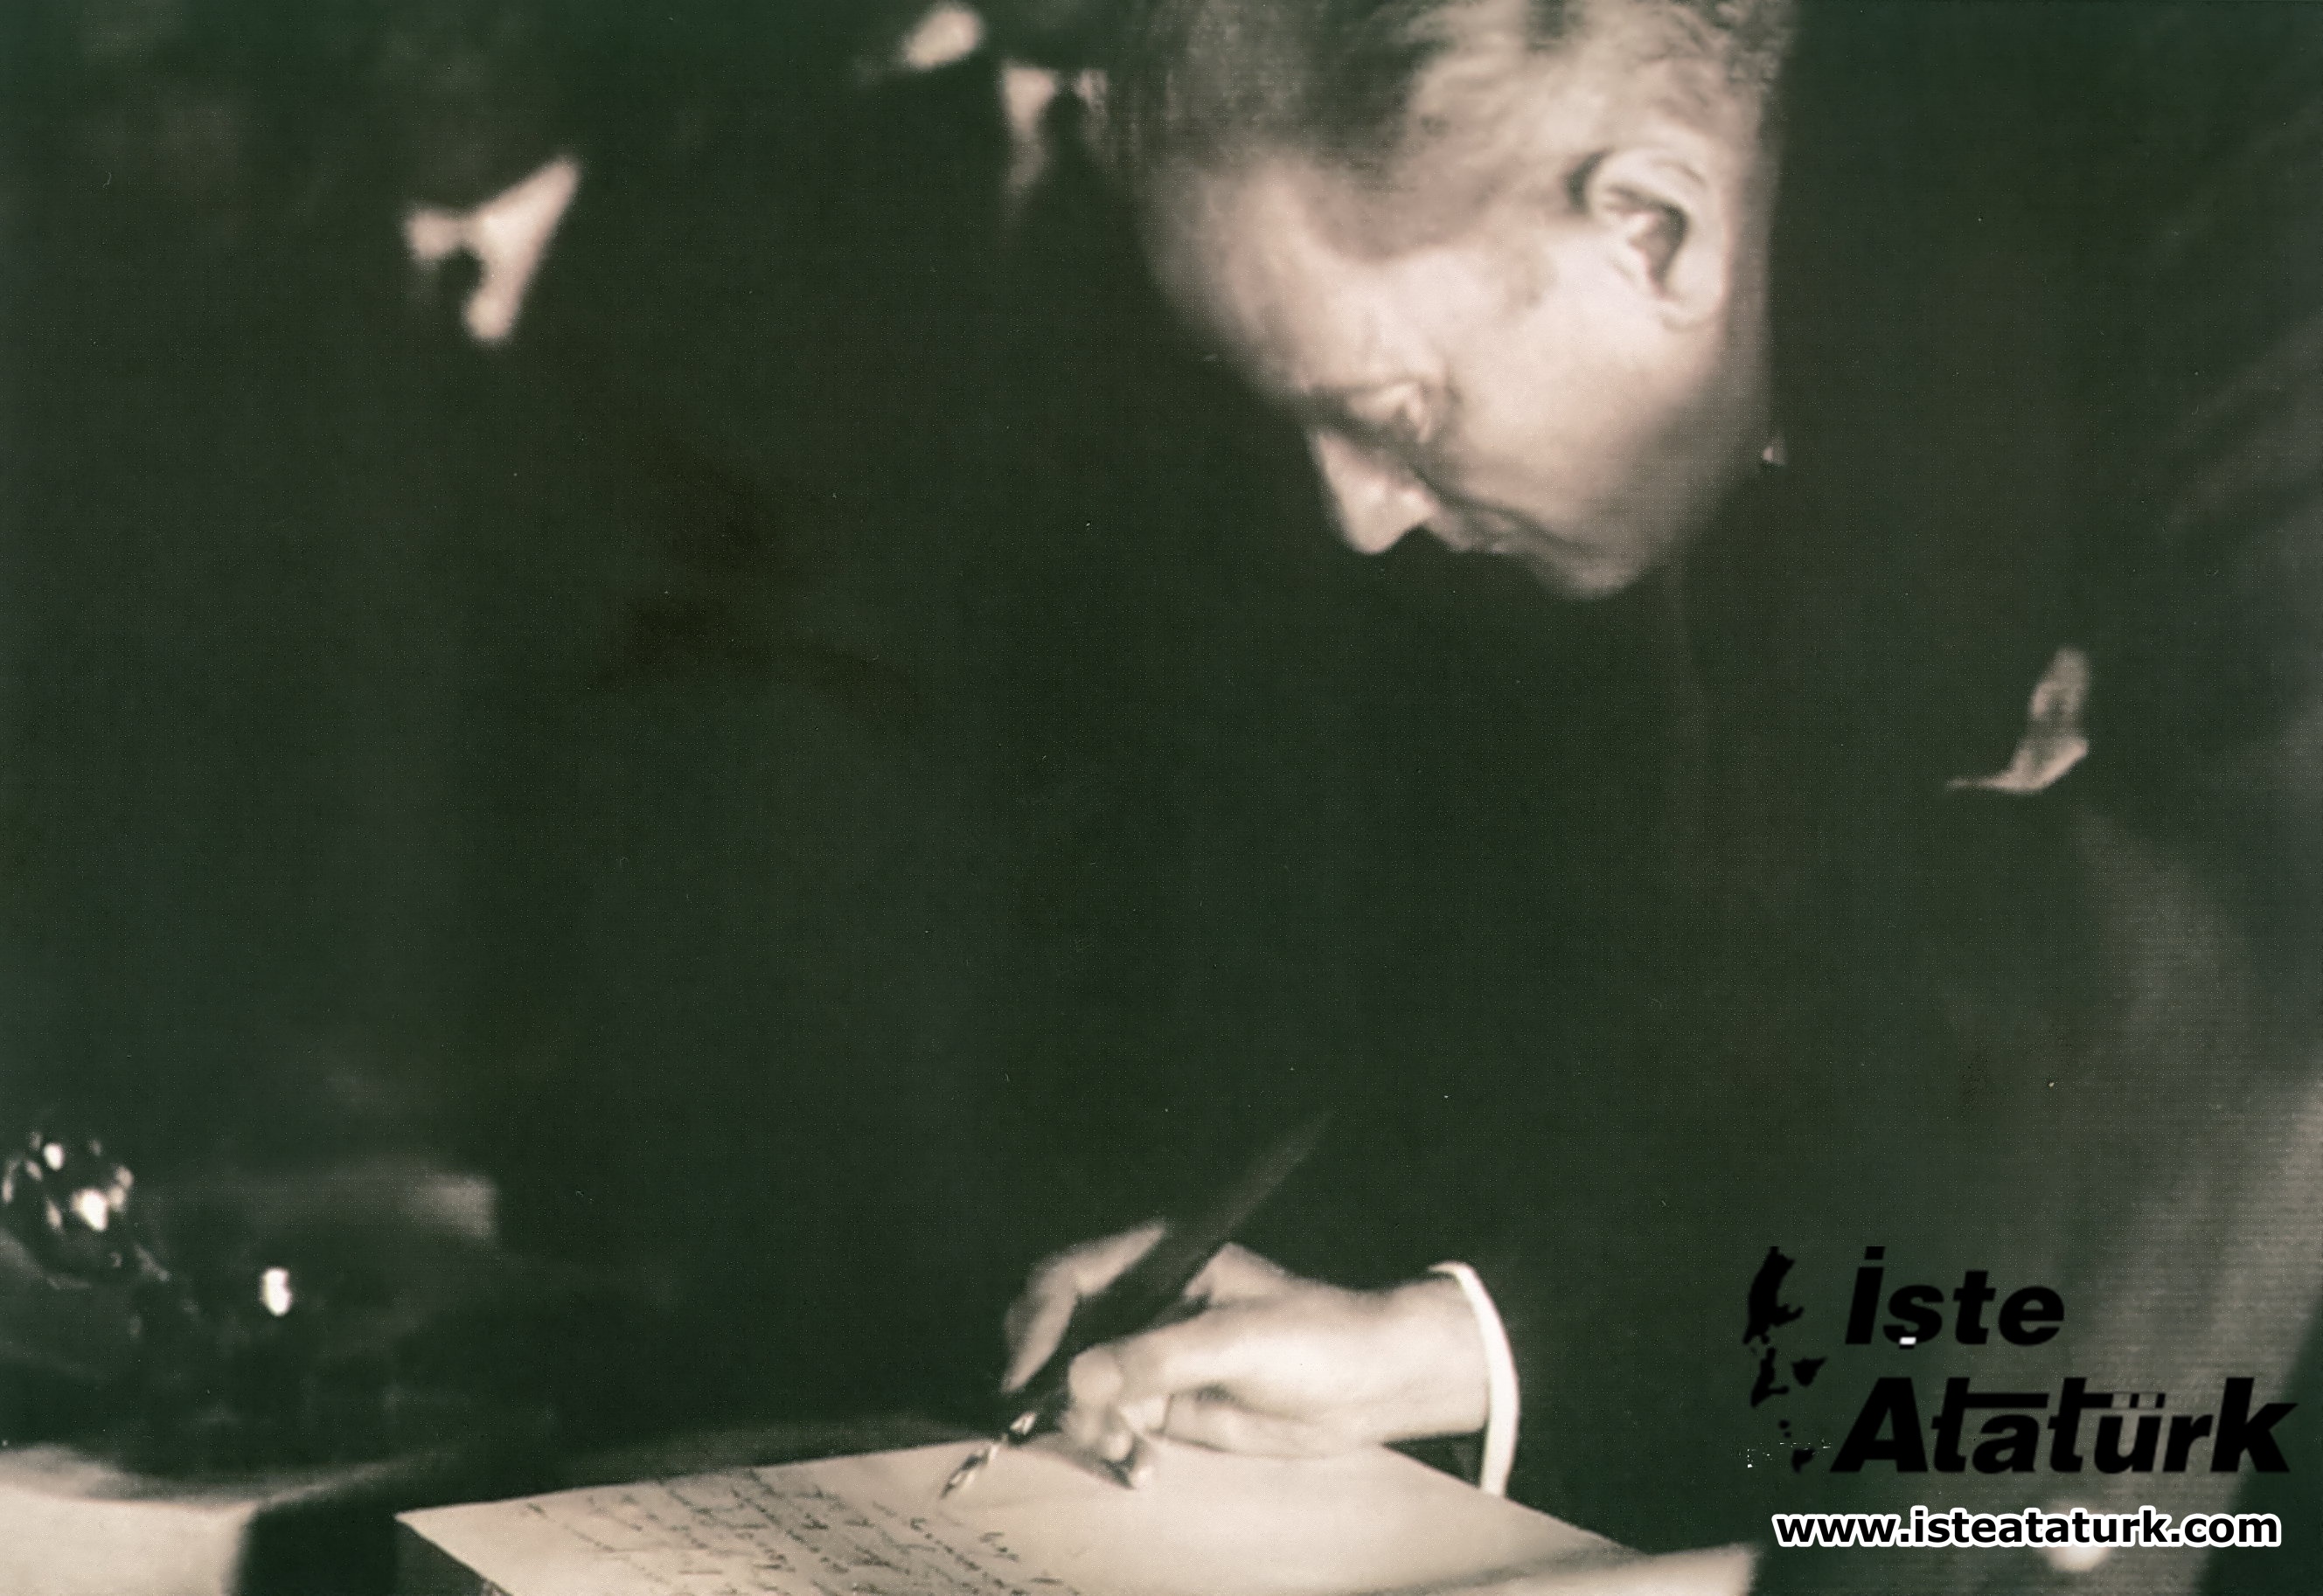 Atatürk's Law Revolution